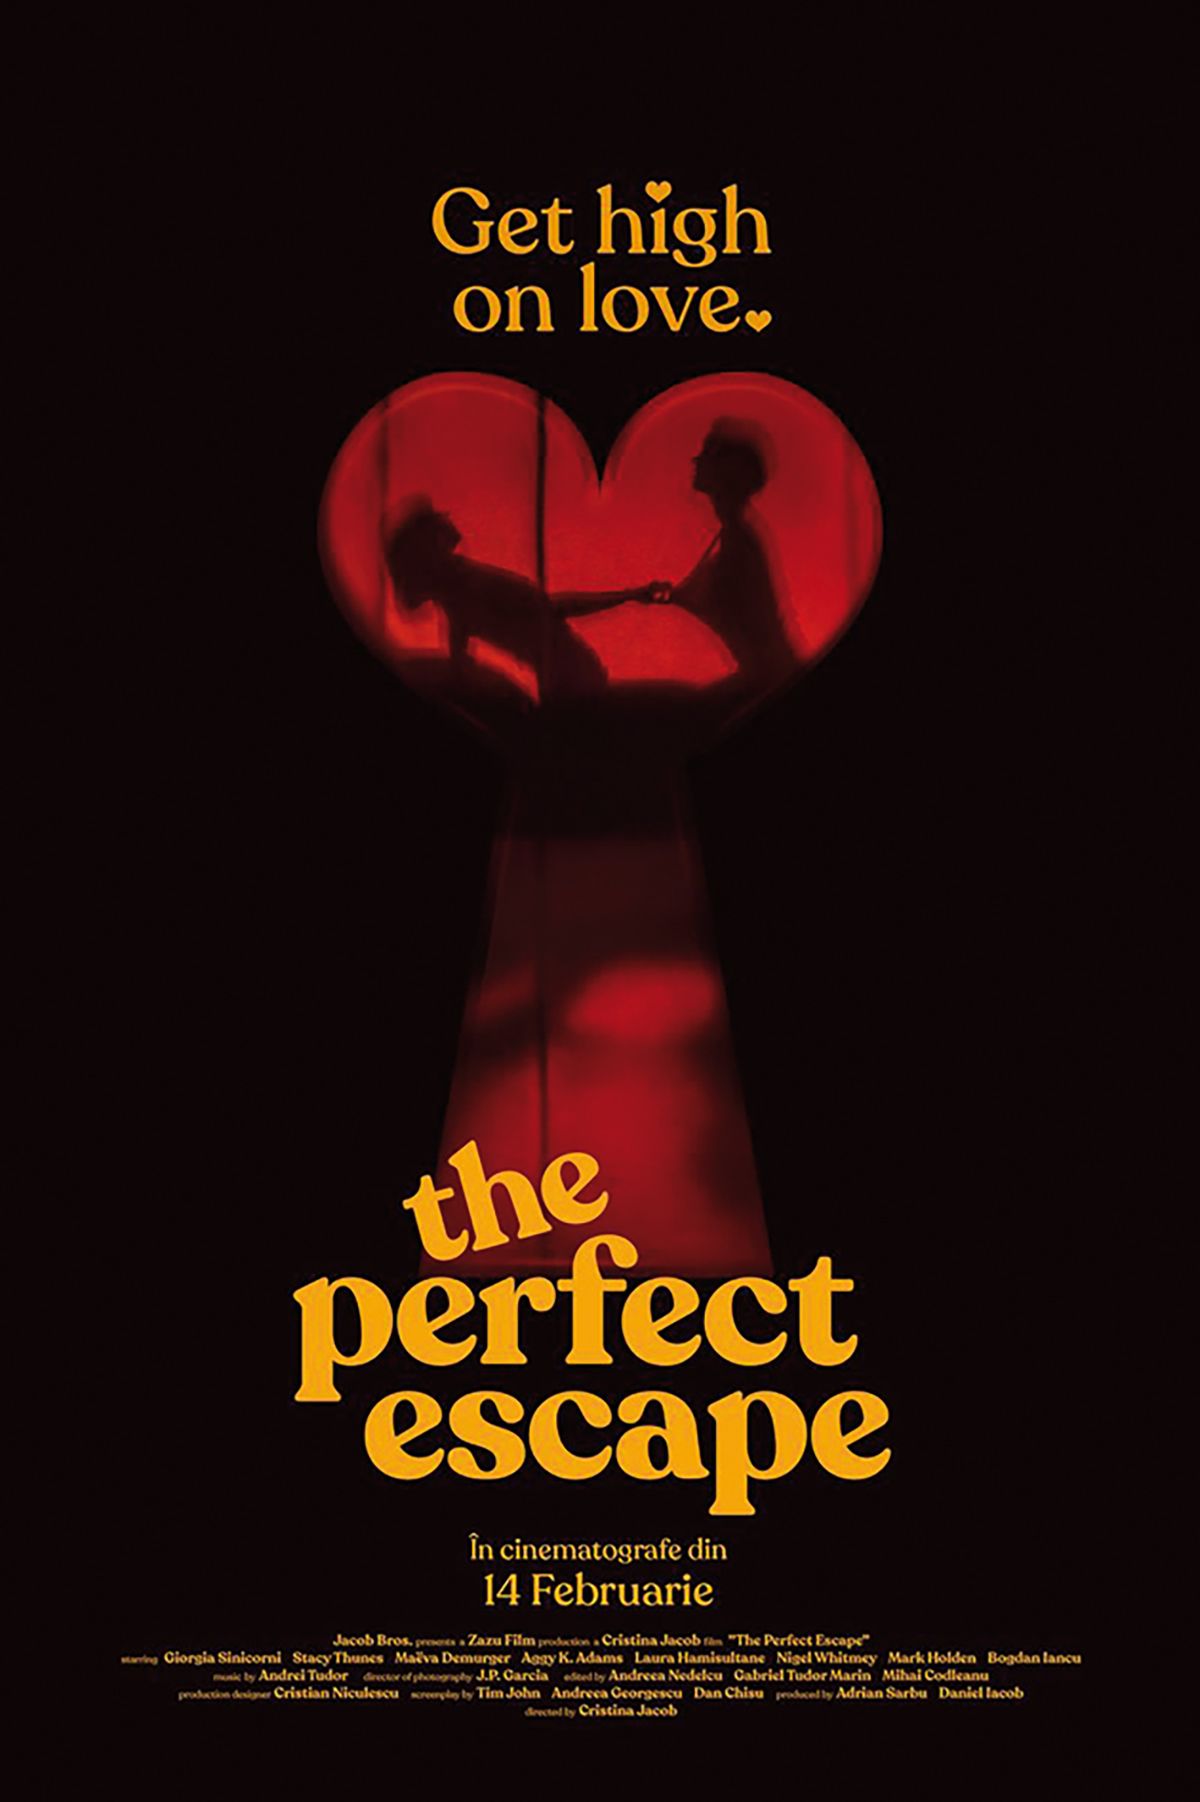 02_the-perfect-escape-863012l-1600x1200-n-cf1ff2d8